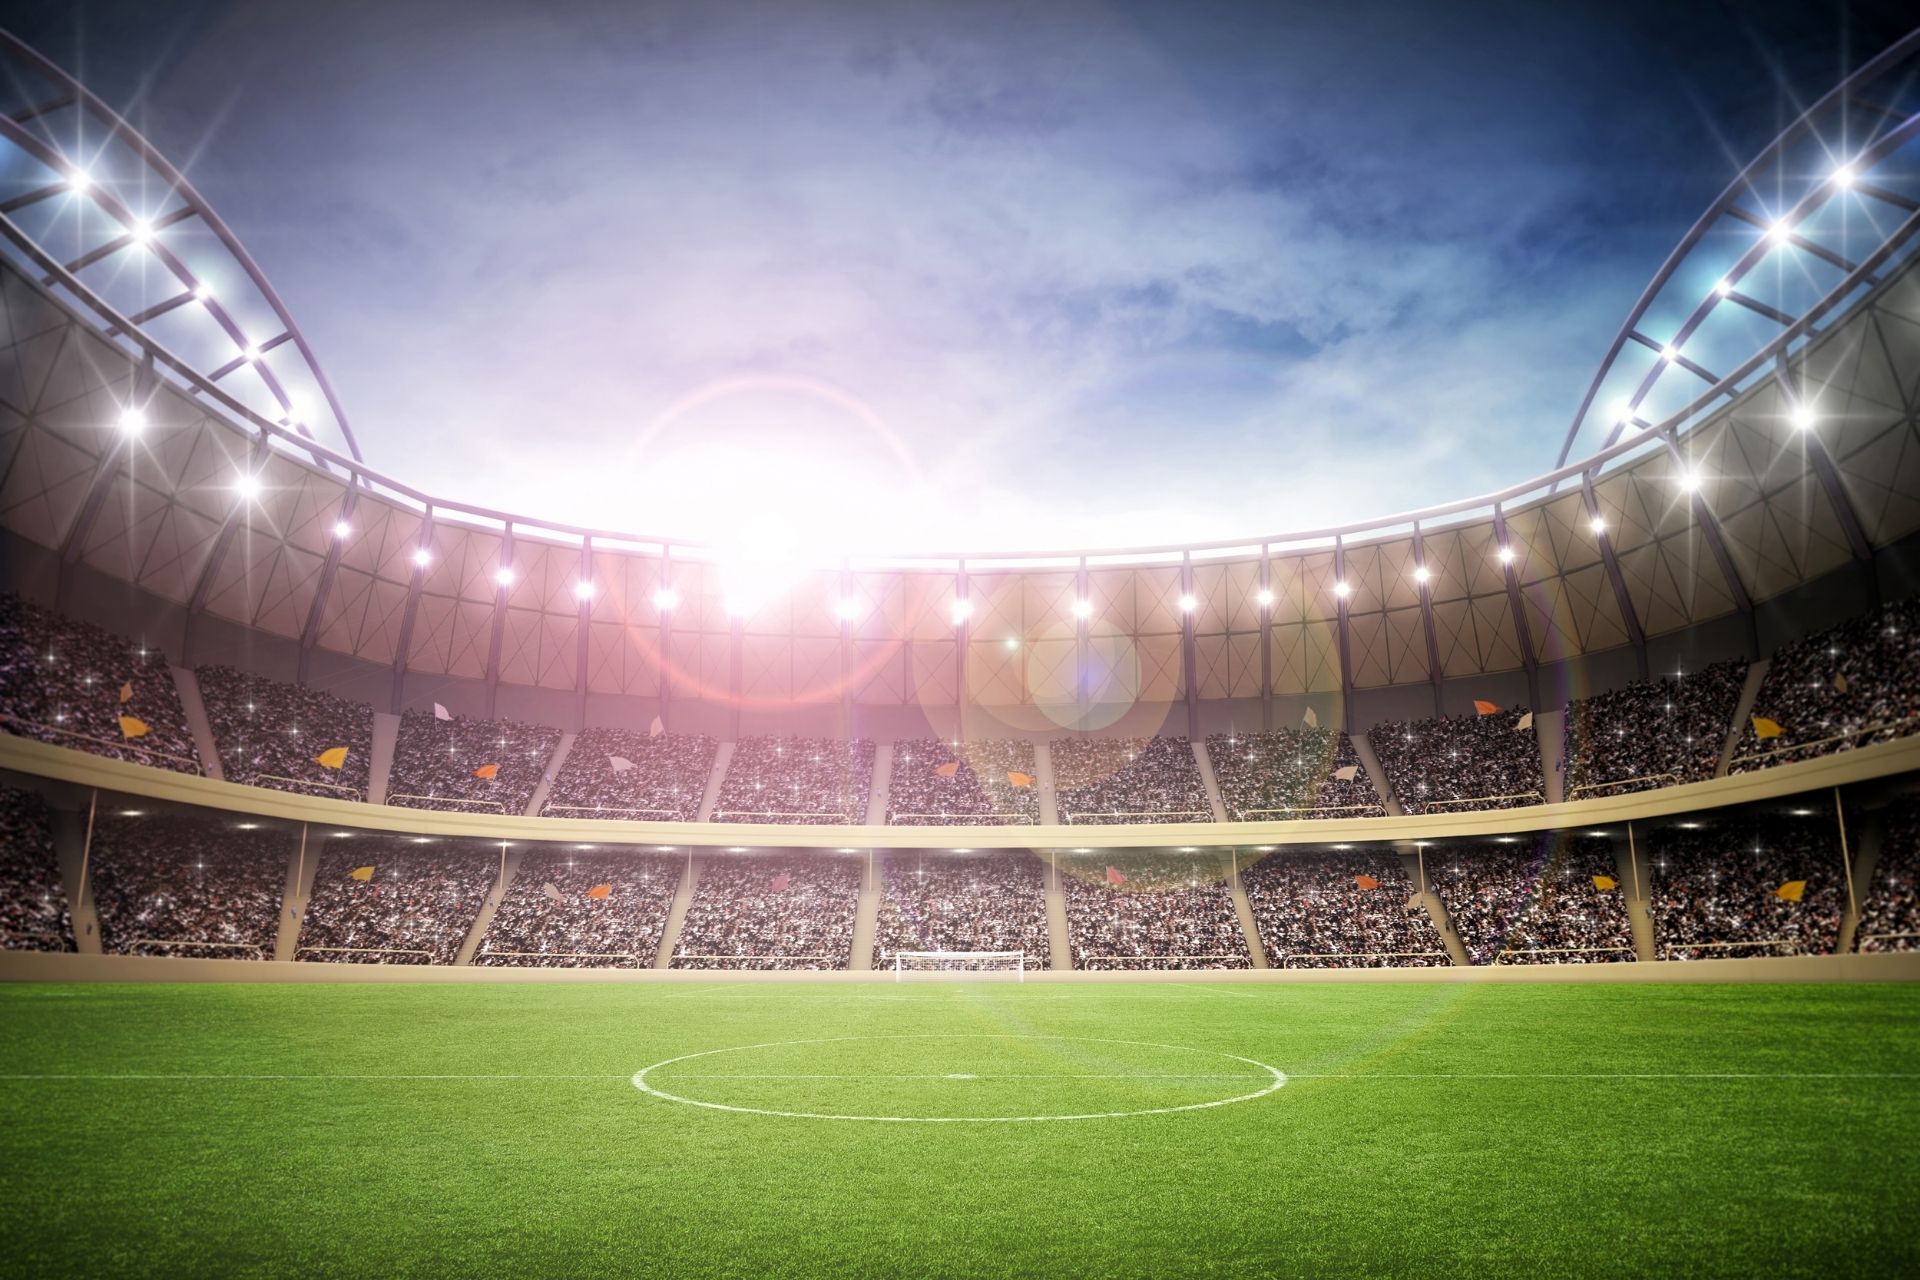 Dnia 2022-10-19 17:00 na stadionie Estadio Nuevo Mirandilla miał miejsce mecz między Cadiz oraz Real Betis zakończony wynikiem 0-0